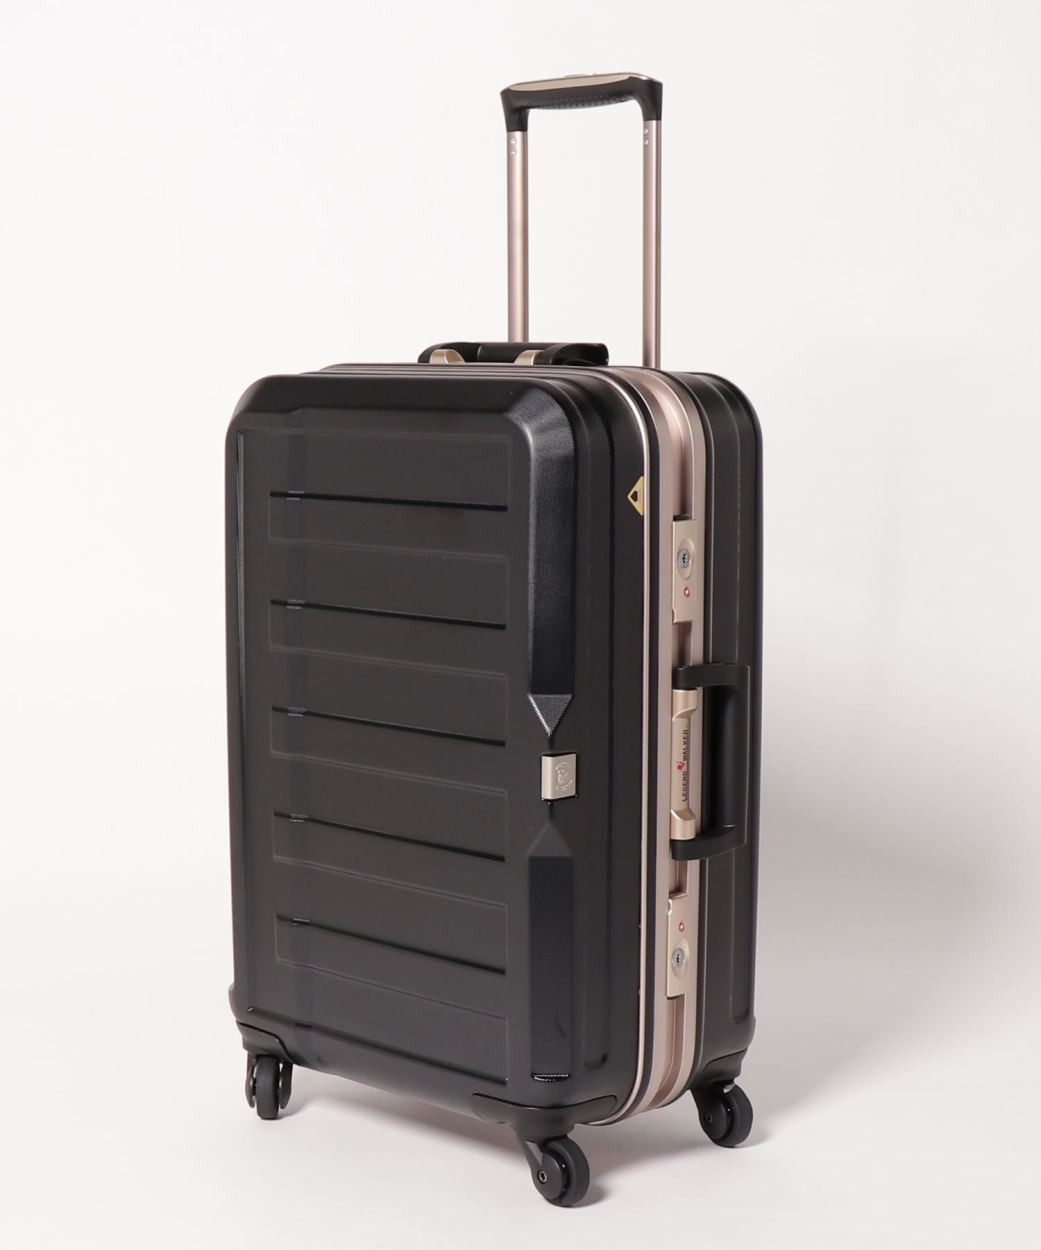 アウトレット スーツケース キャリーケース キャリーバッグ トランク 中型 軽量 Mサイズ おしゃれ...